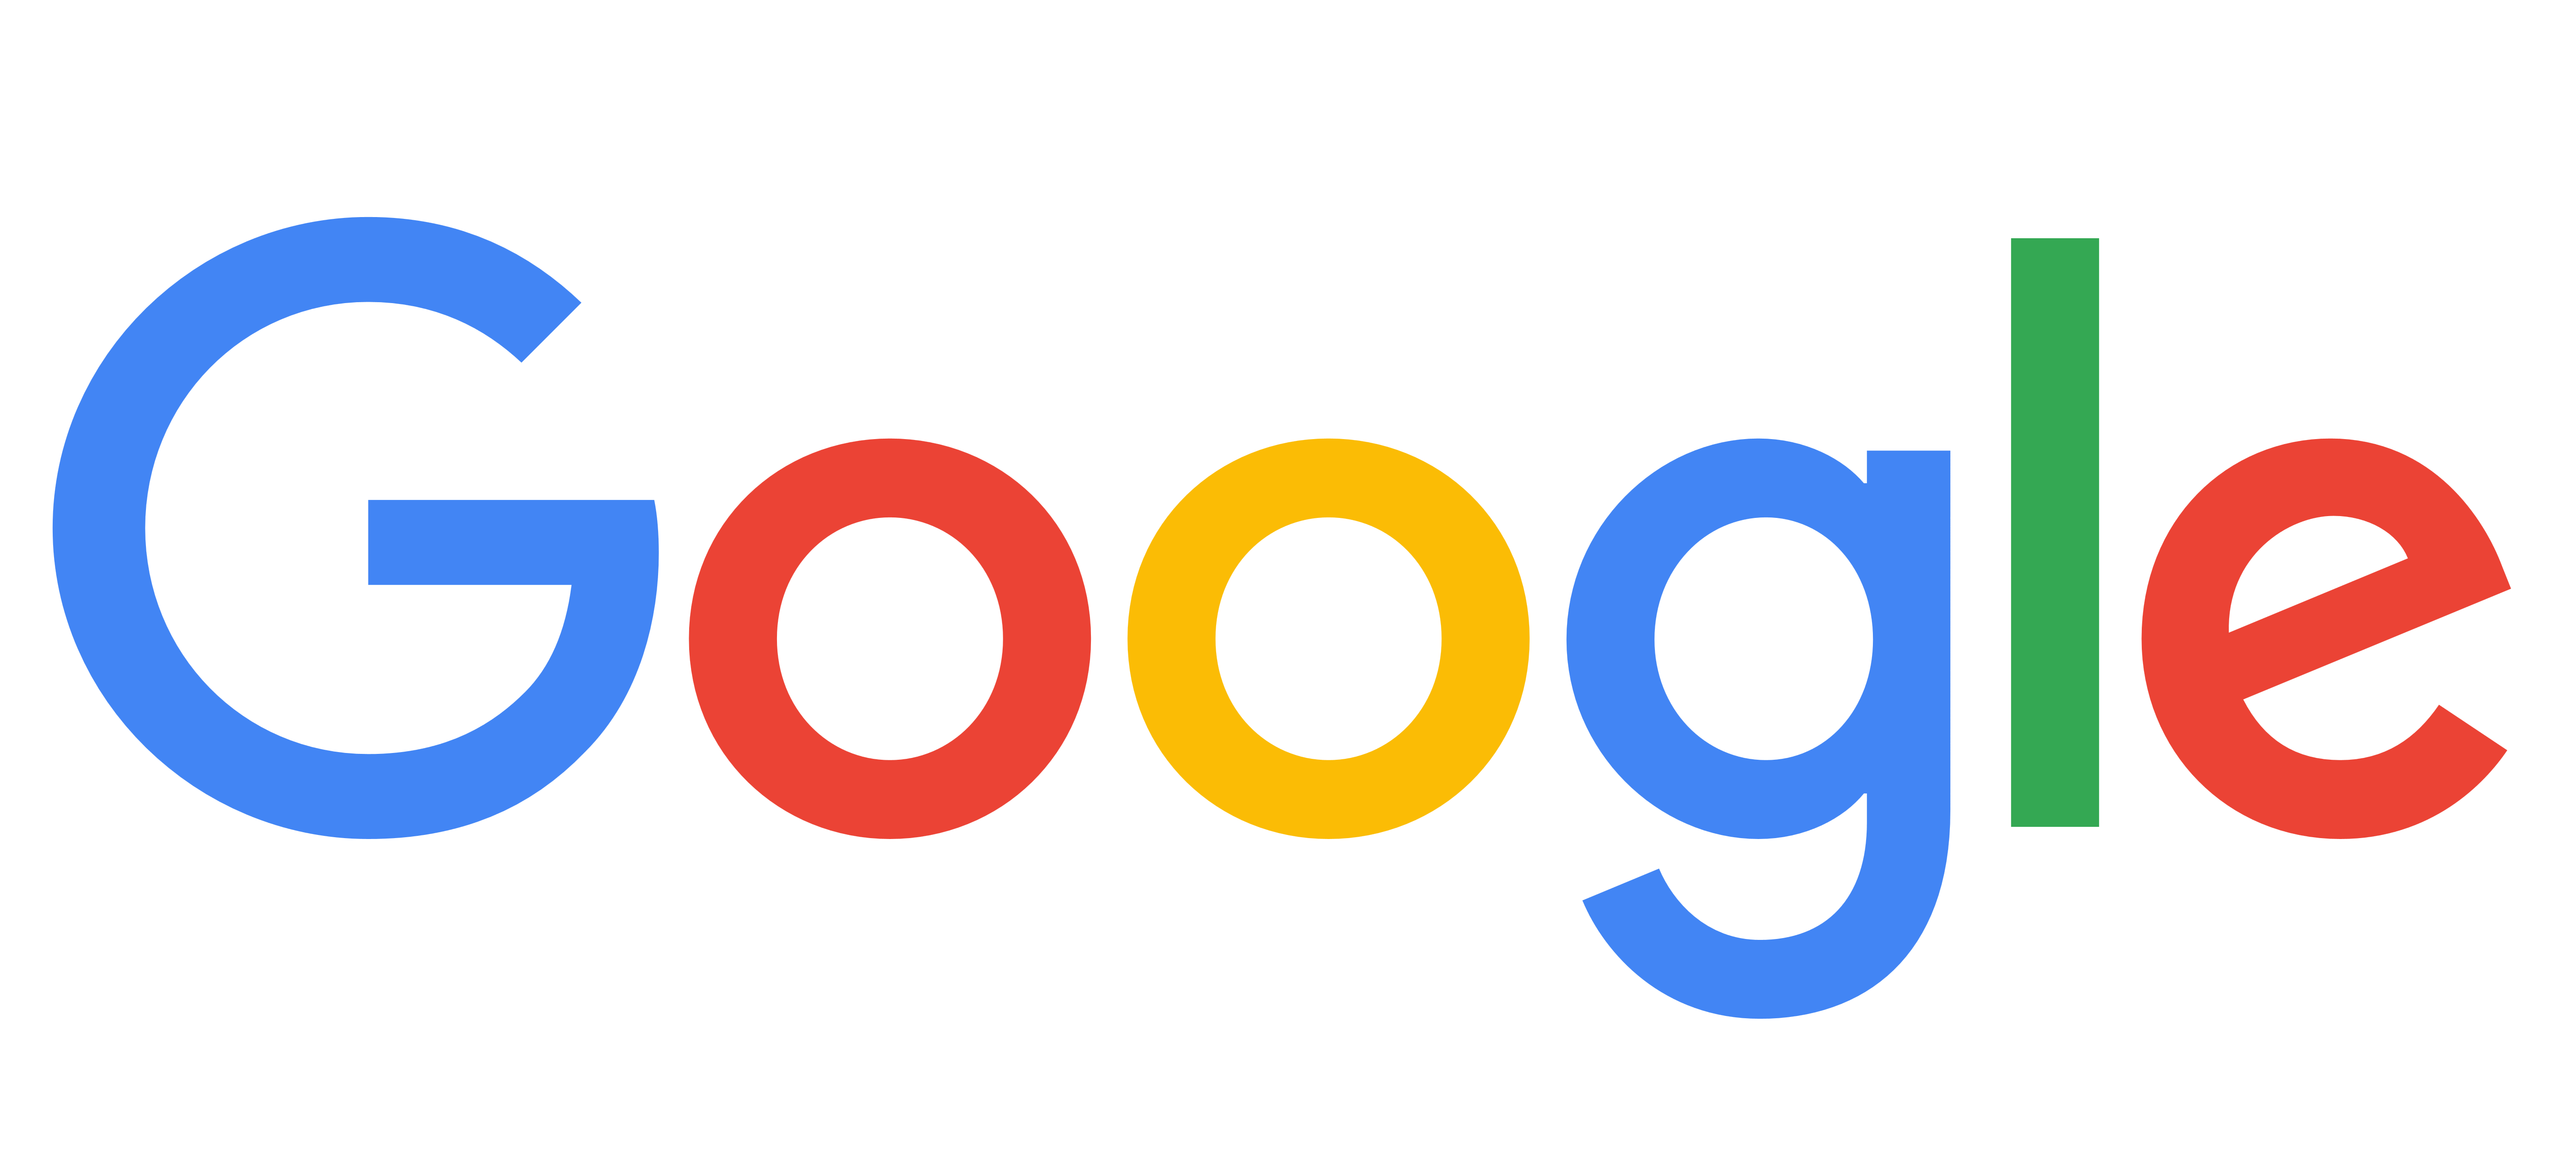 Google logo, logotype